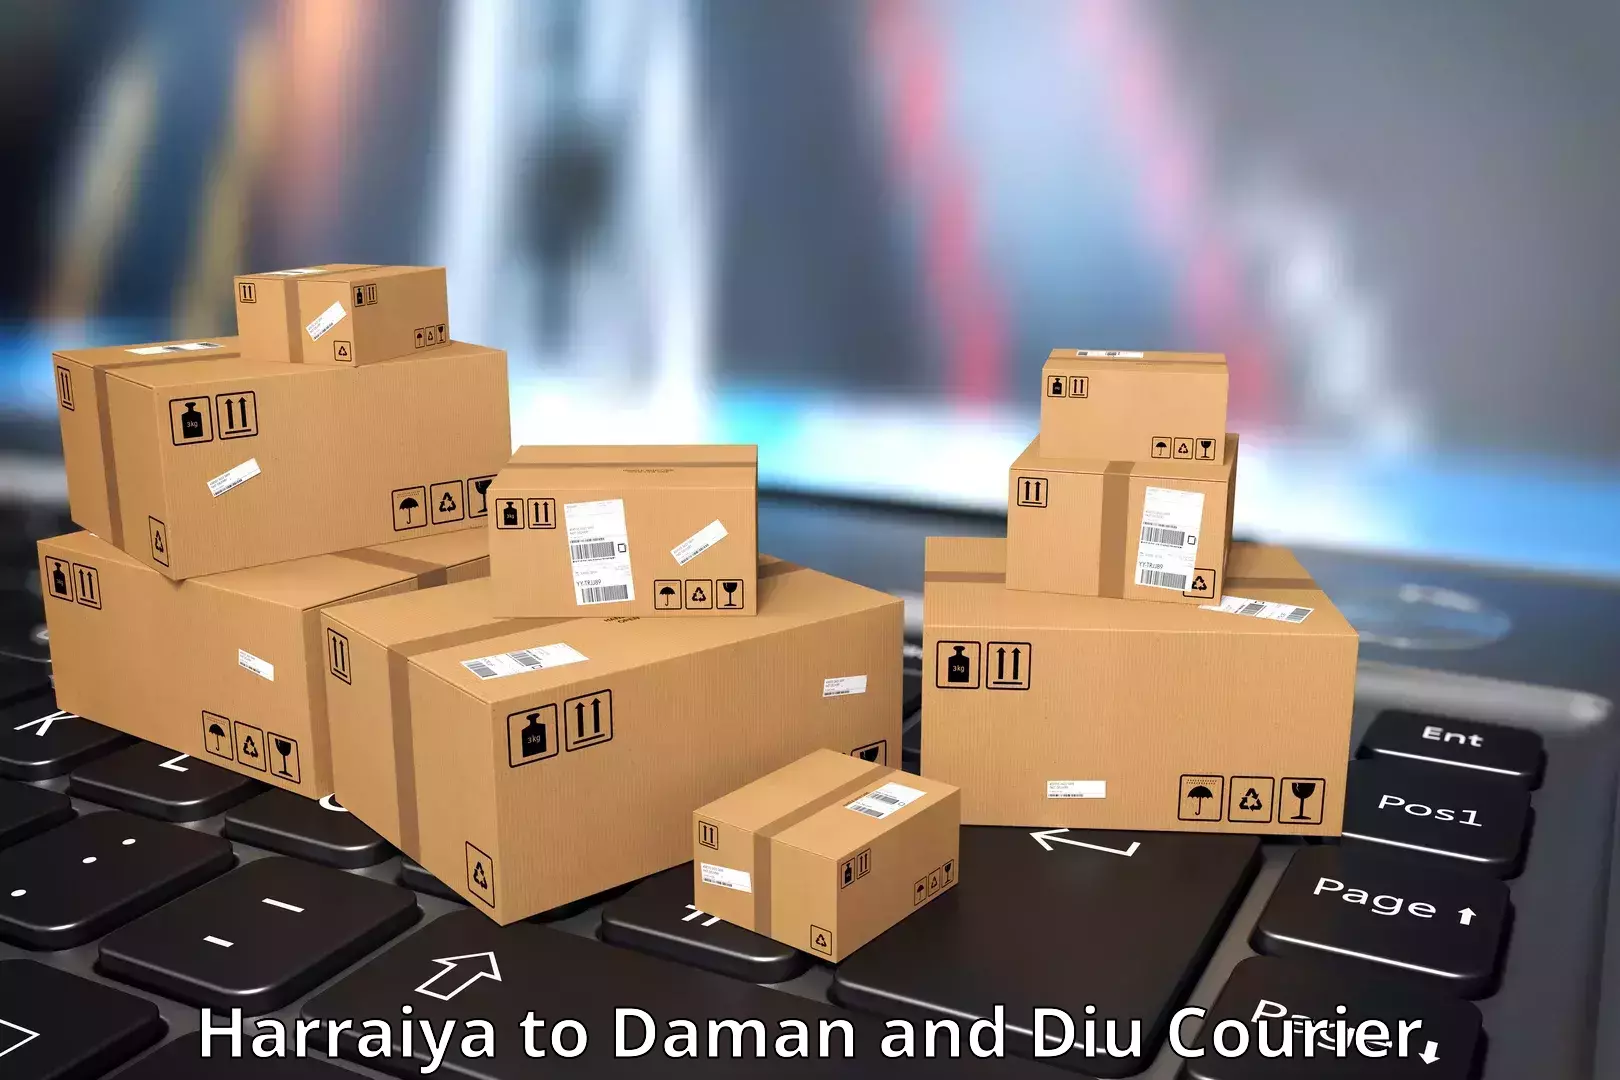 Express package handling Harraiya to Diu